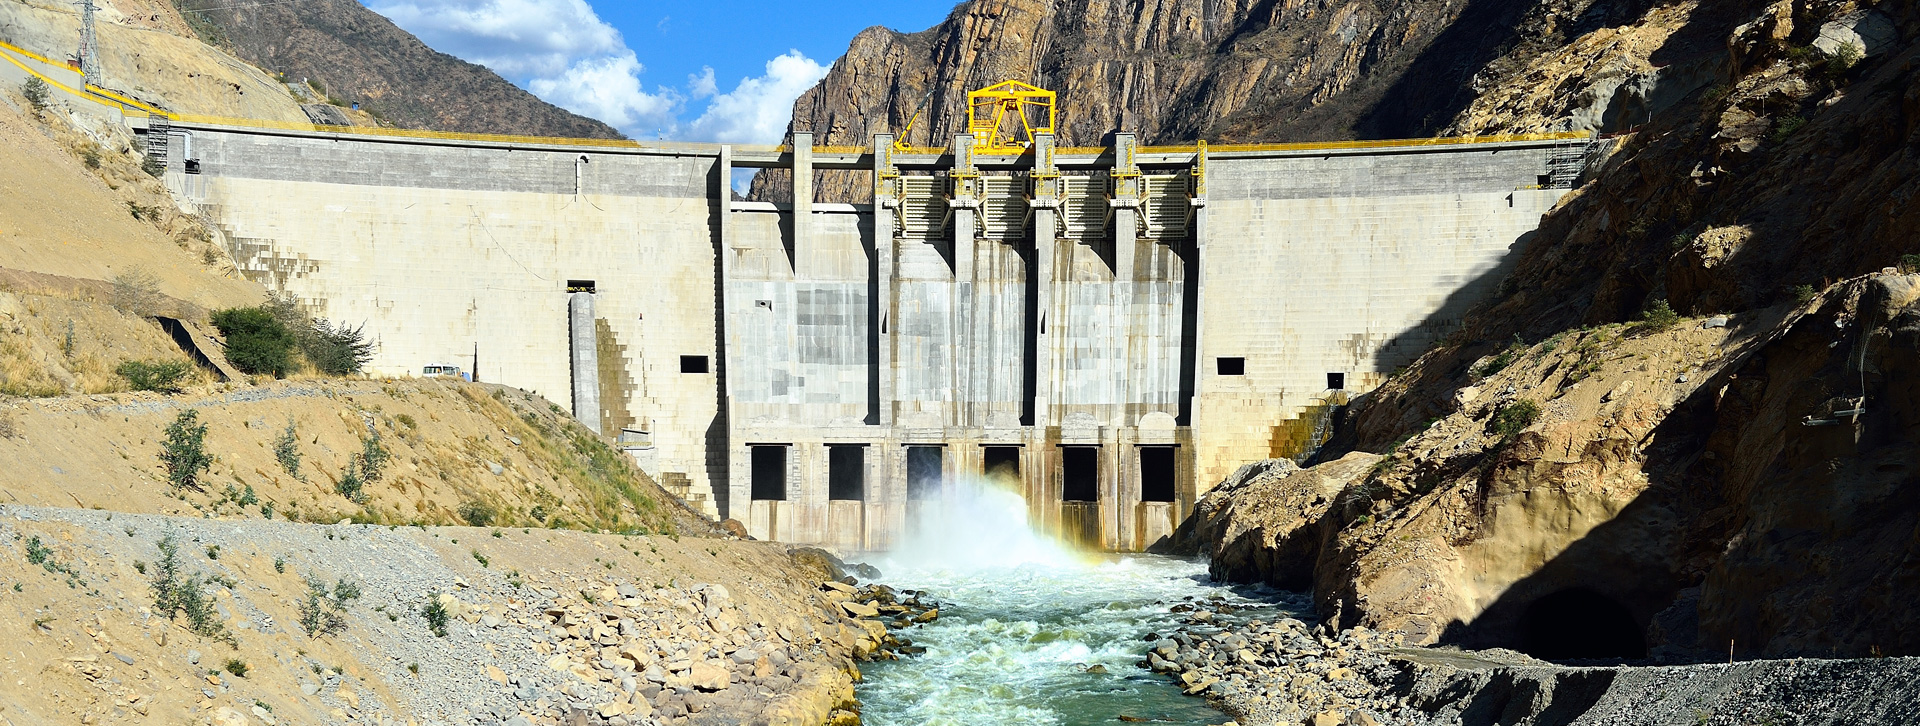 CUMBRA: Central Hidroeléctrica Cerro del Águila, la segunda más grande del Perú